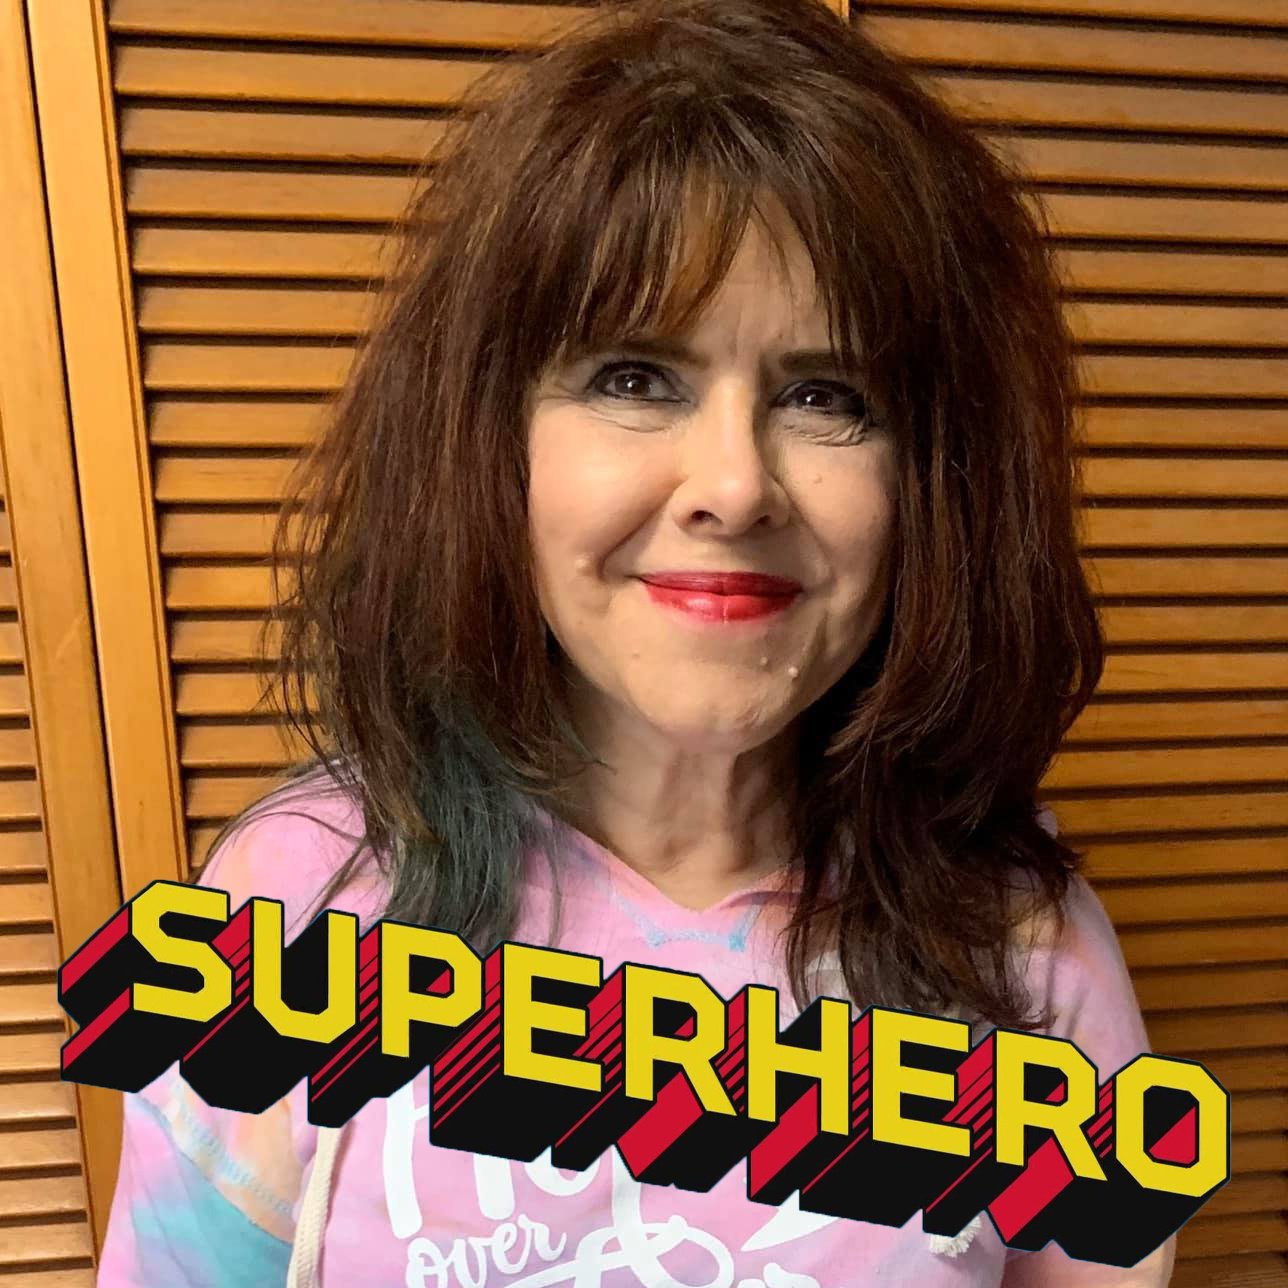 Frieda Weeks is The Art Store's Superhero 